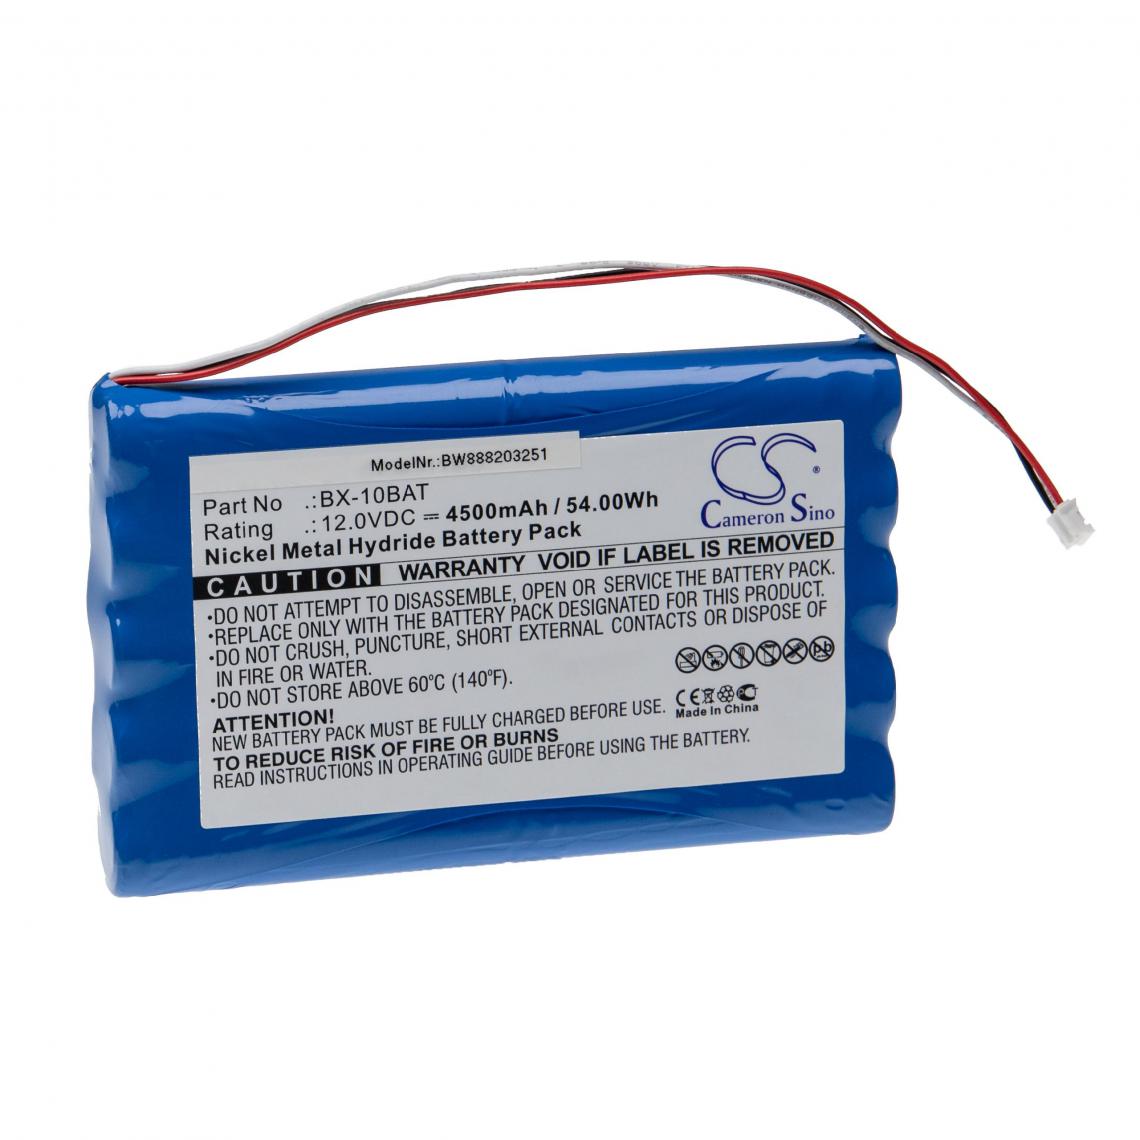 Vhbw - vhbw Batterie remplacement pour Colin Medical BX-10BAT pour appareil médical (4500mAh, 12V, NiMH) - Piles spécifiques